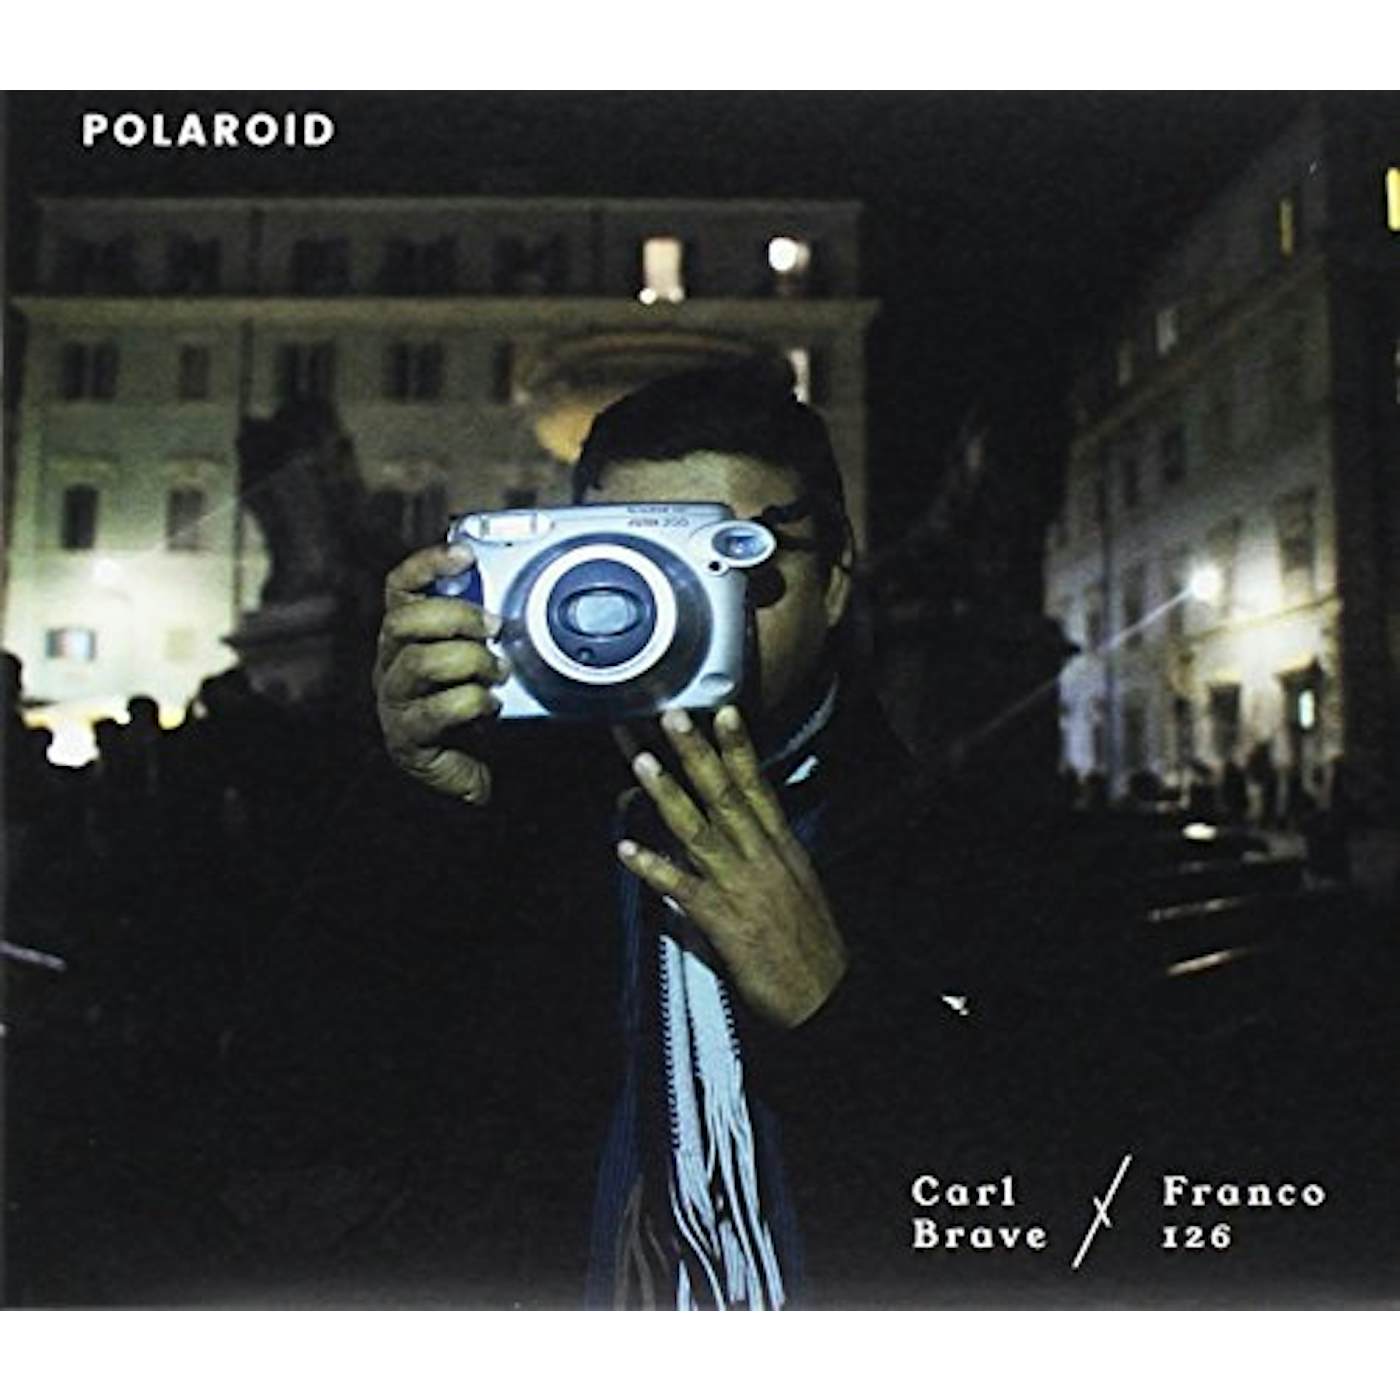 Carl Brave x Franco126 POLAROID CD